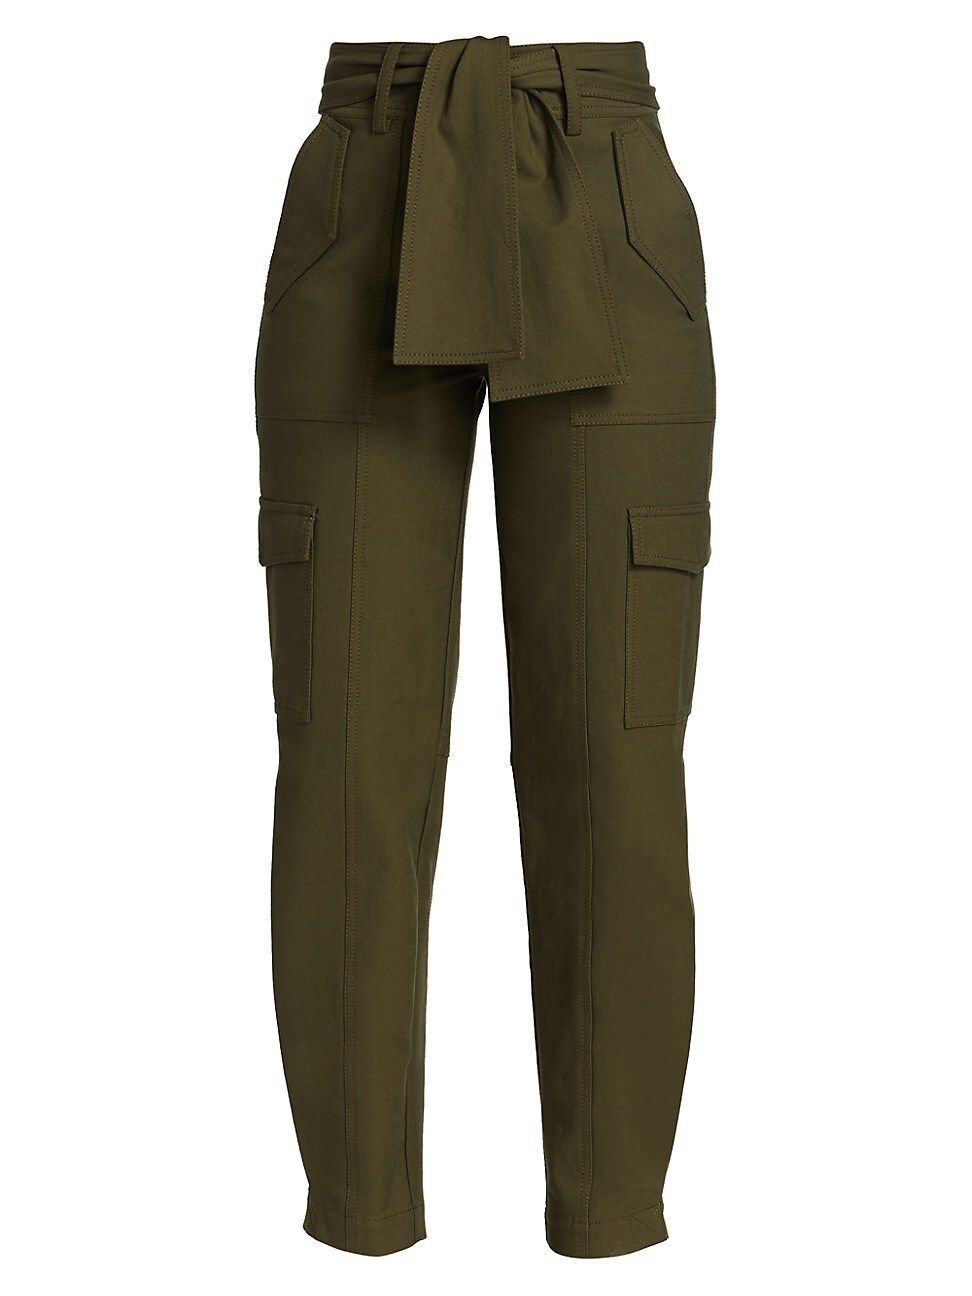 Derek Lam 10 Crosby Women's Elian Utility Pants - Army - Size 10 | Saks Fifth Avenue